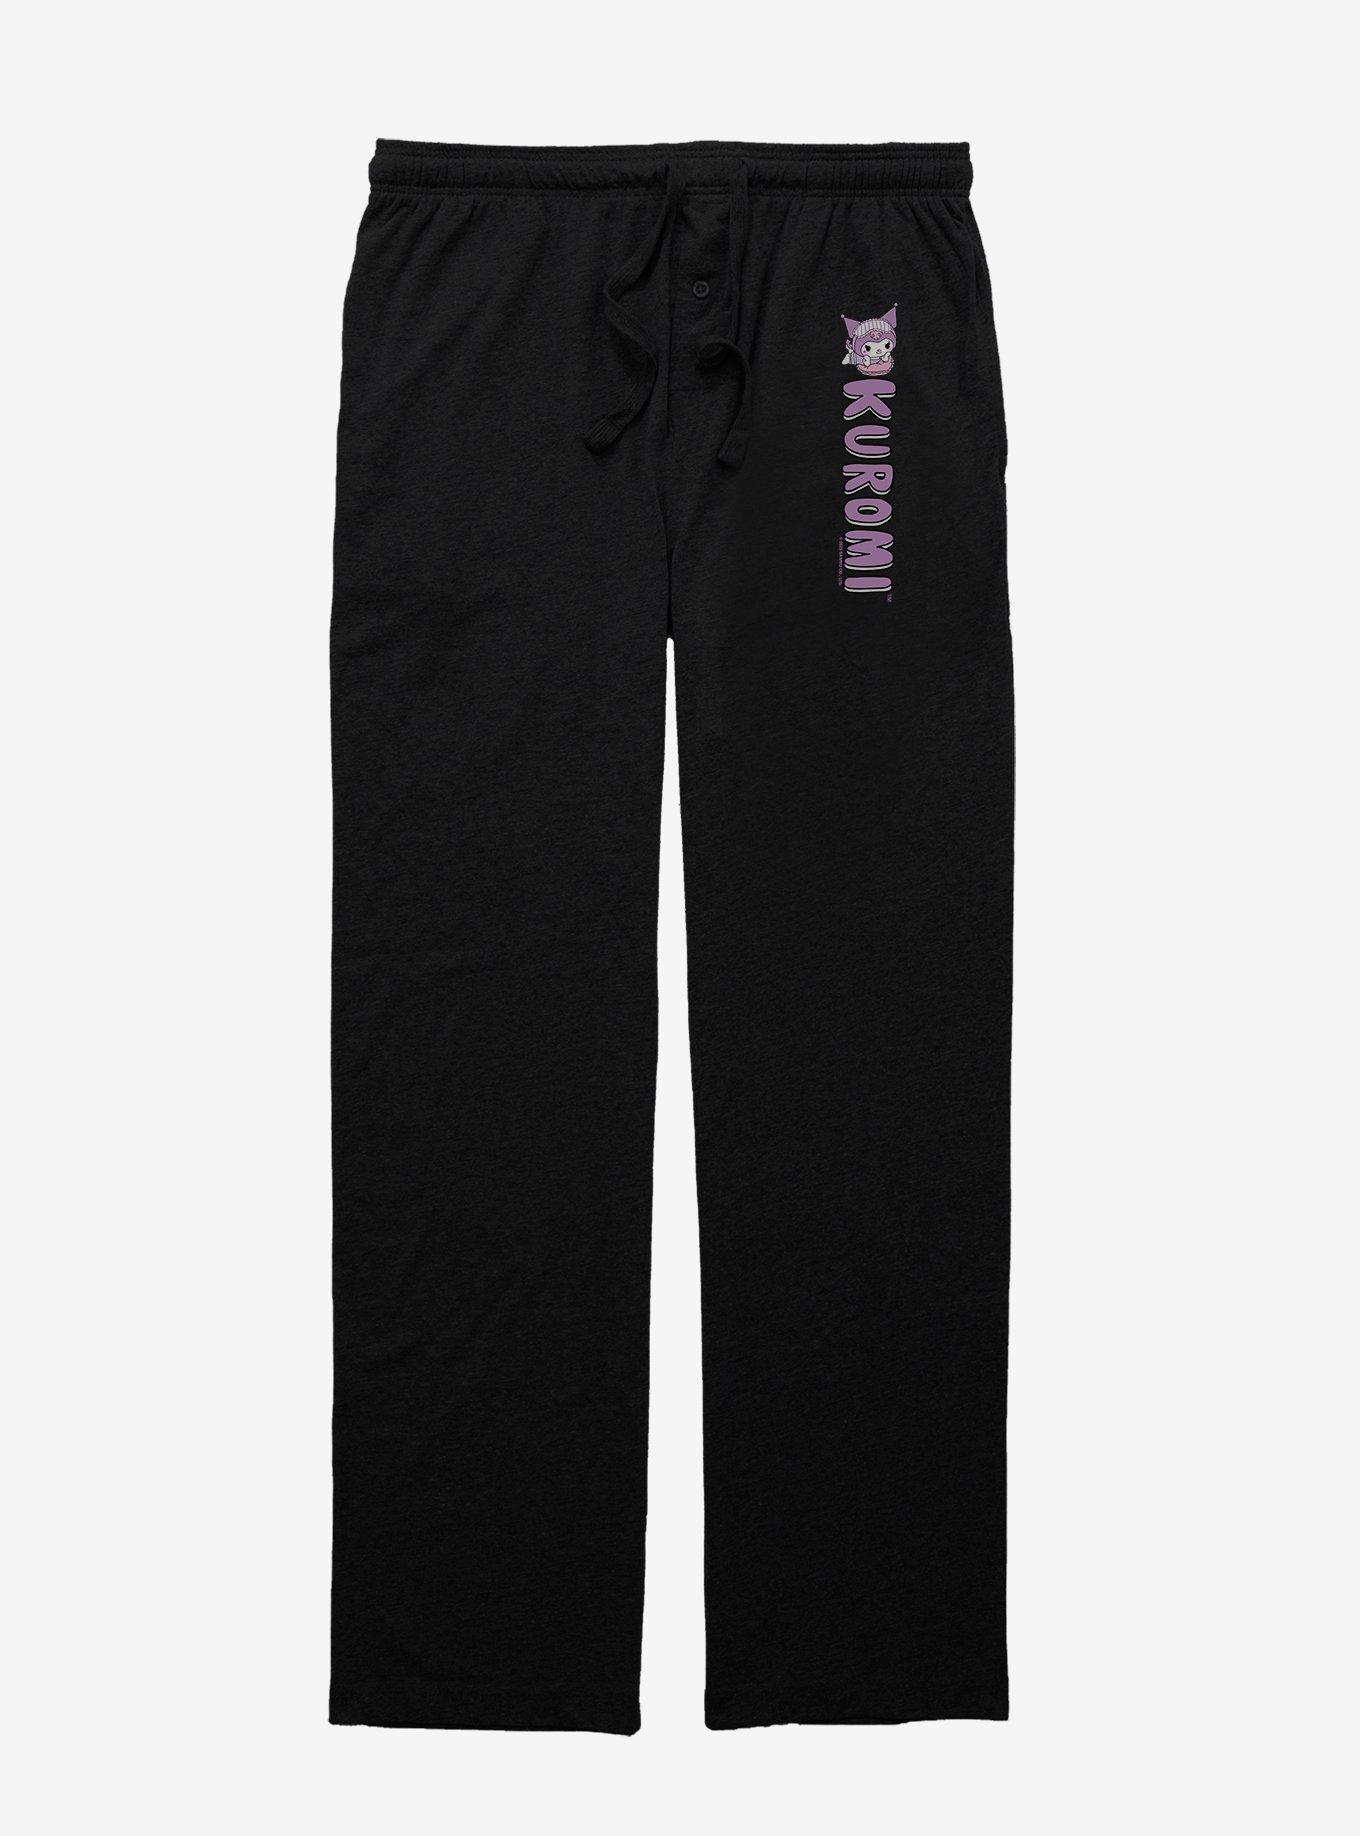 Kuromi Bedtime Pajama Pants, BLACK, hi-res